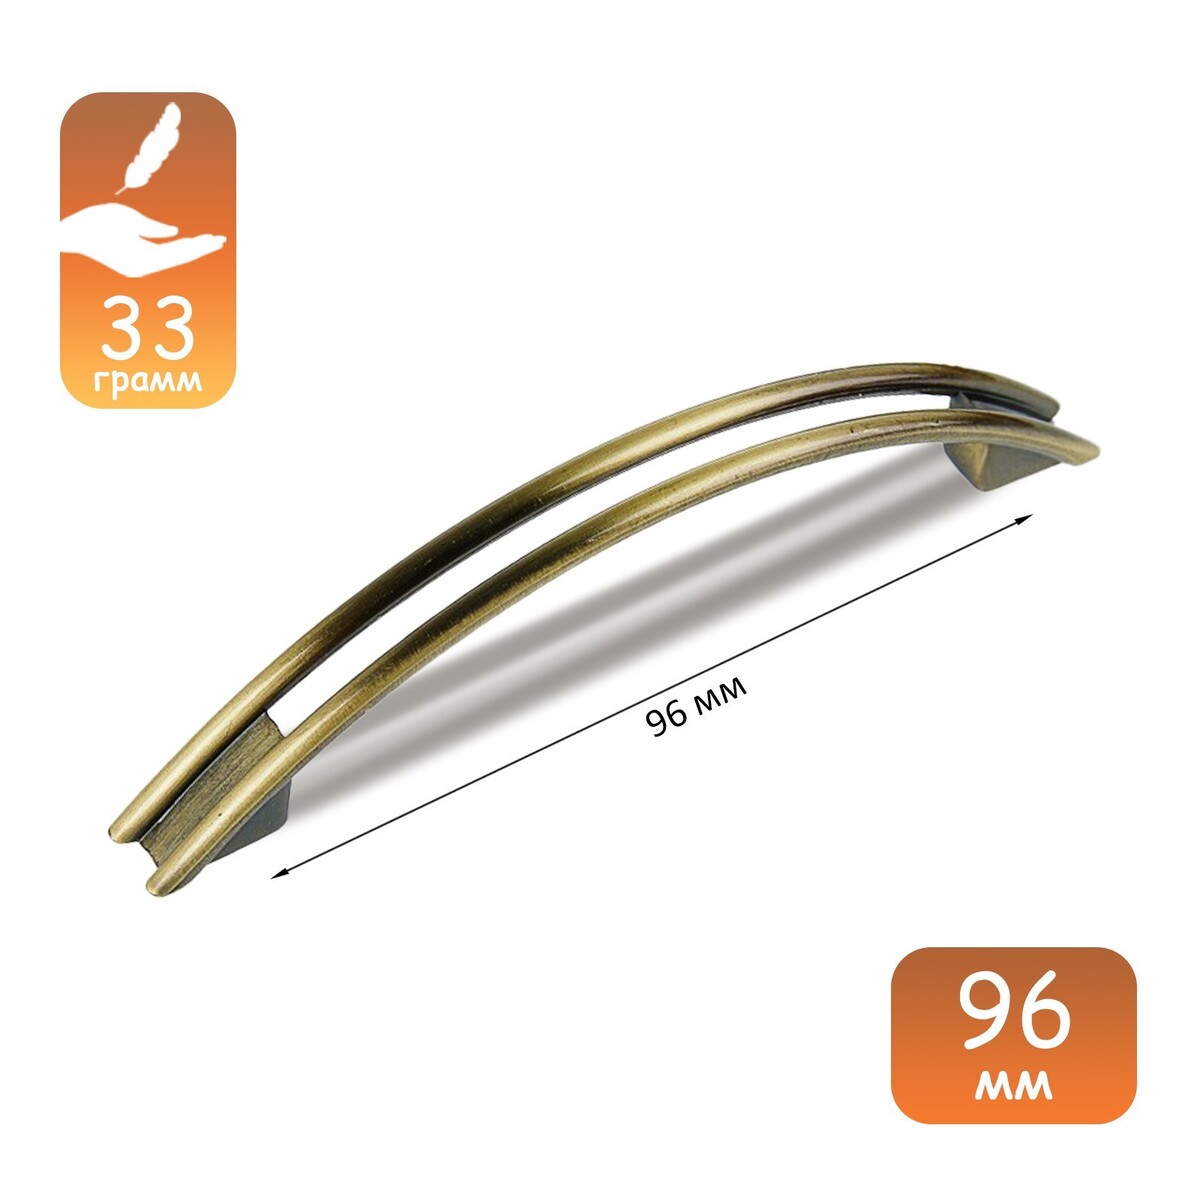 Ручка-скоба cappio rsc001, м/о 96 мм, цвет бронза ручка скоба киров рс 100 бронза